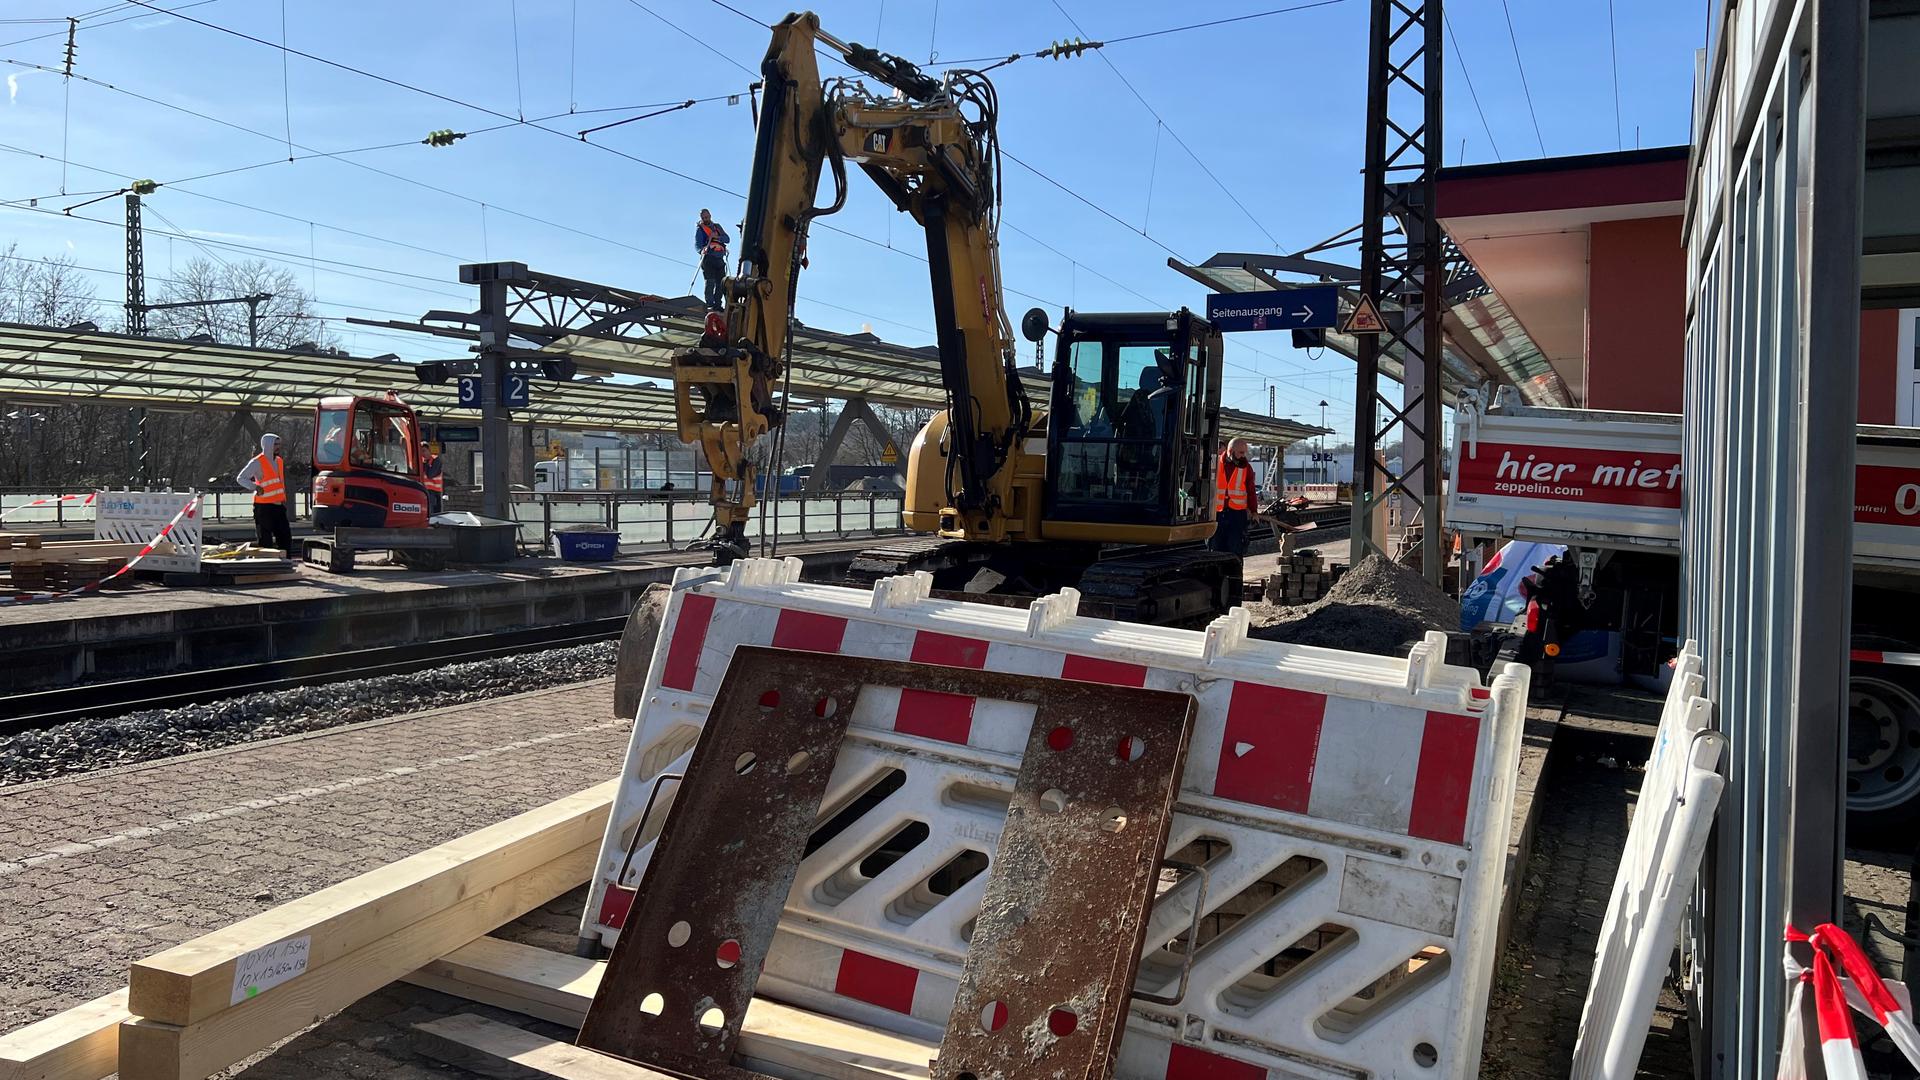 Der Anfang ist gemacht: Ende Februar erledigte die Deutsche Bahn erste Bauarbeiten für den barrierefreien Ausbau.